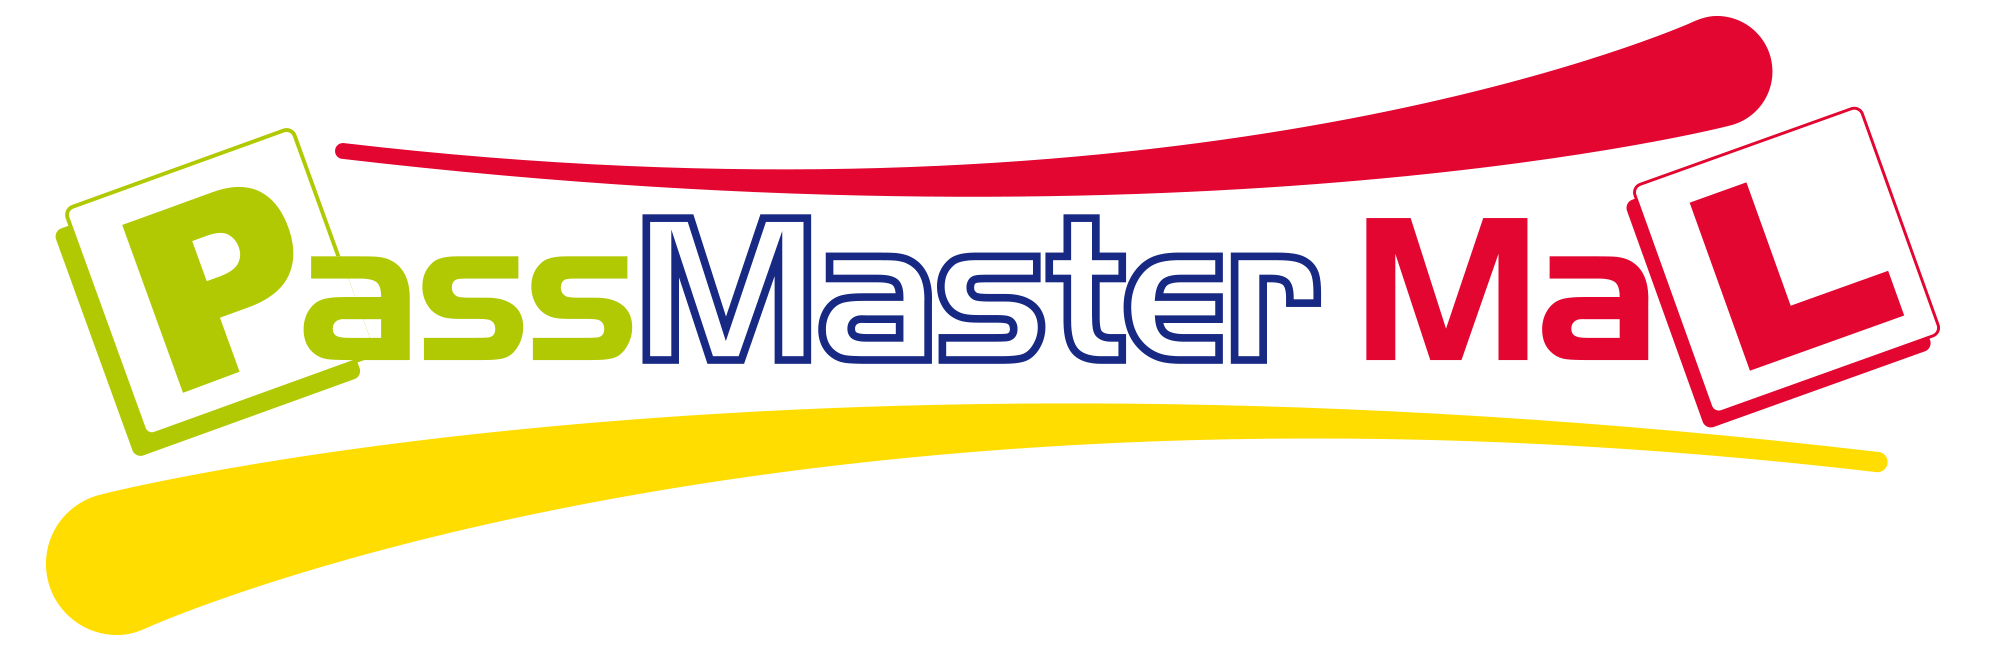 Pass Plus Logo - PassMasterMal